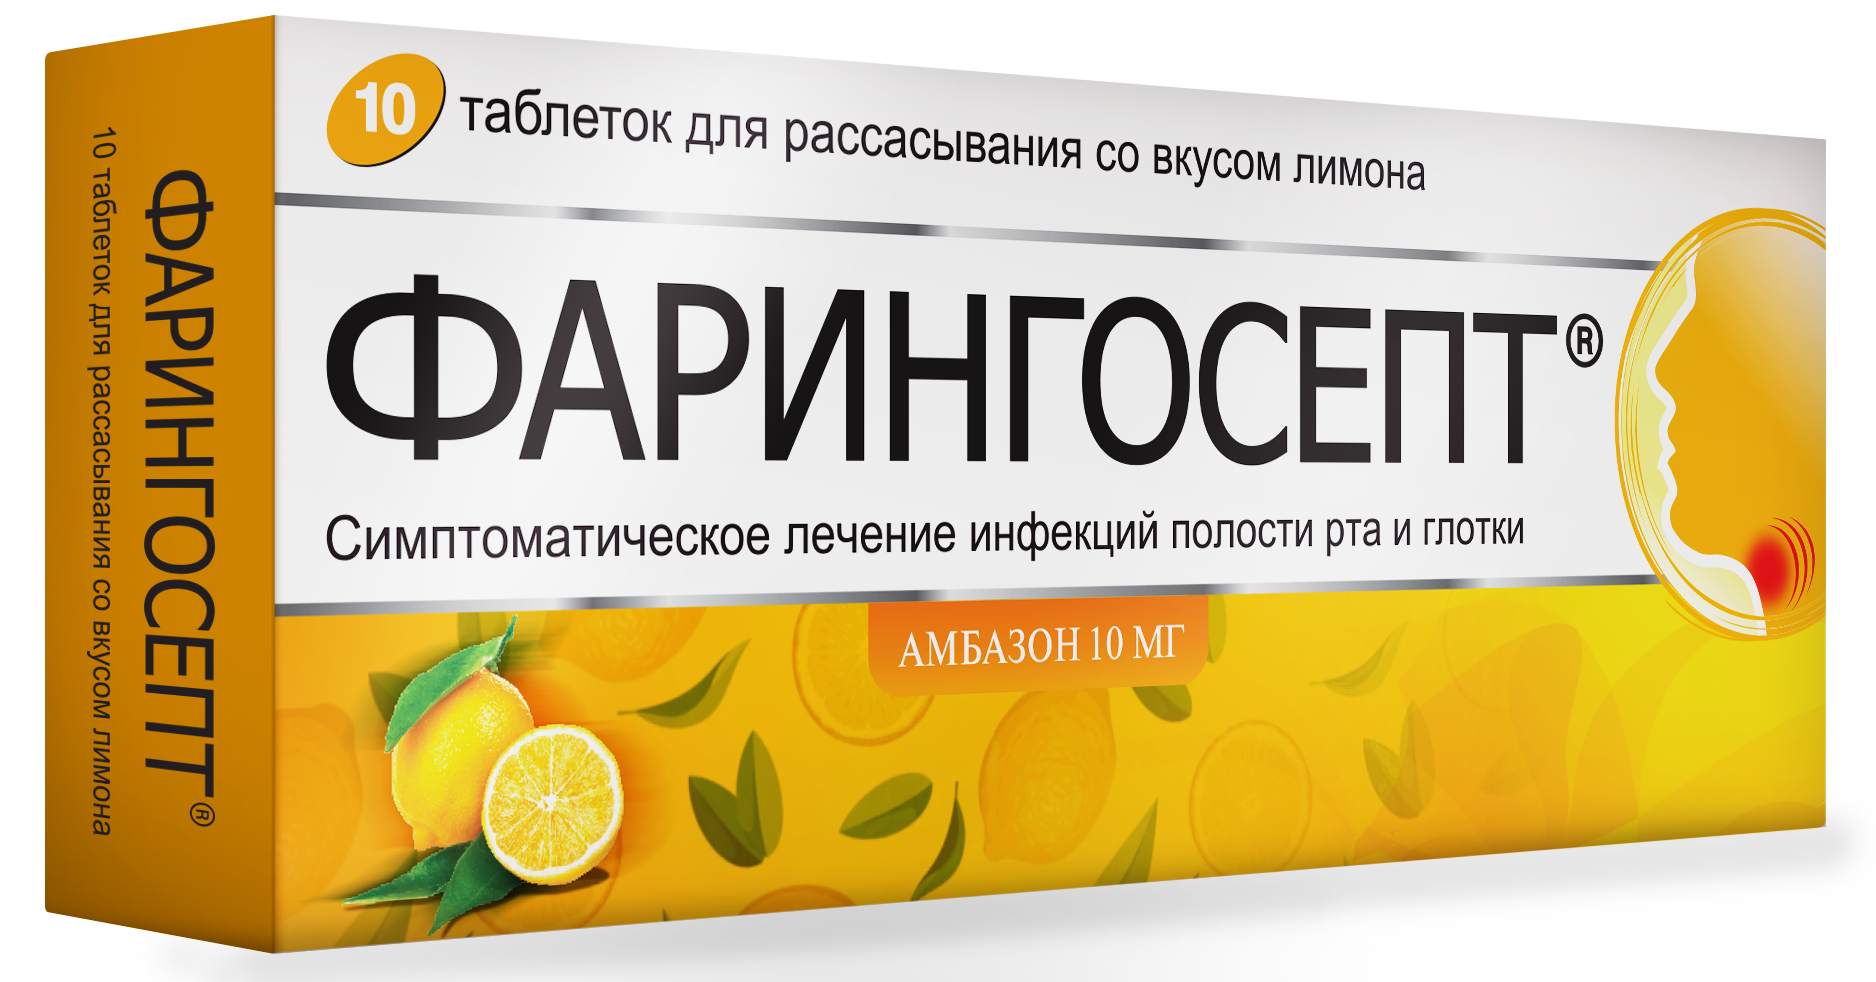 Фарингосепт, таблетки для рассасывания (лимон) 10 мг, 10 шт. септолете тотал таблетки для рассасывания 4 мг 16 шт